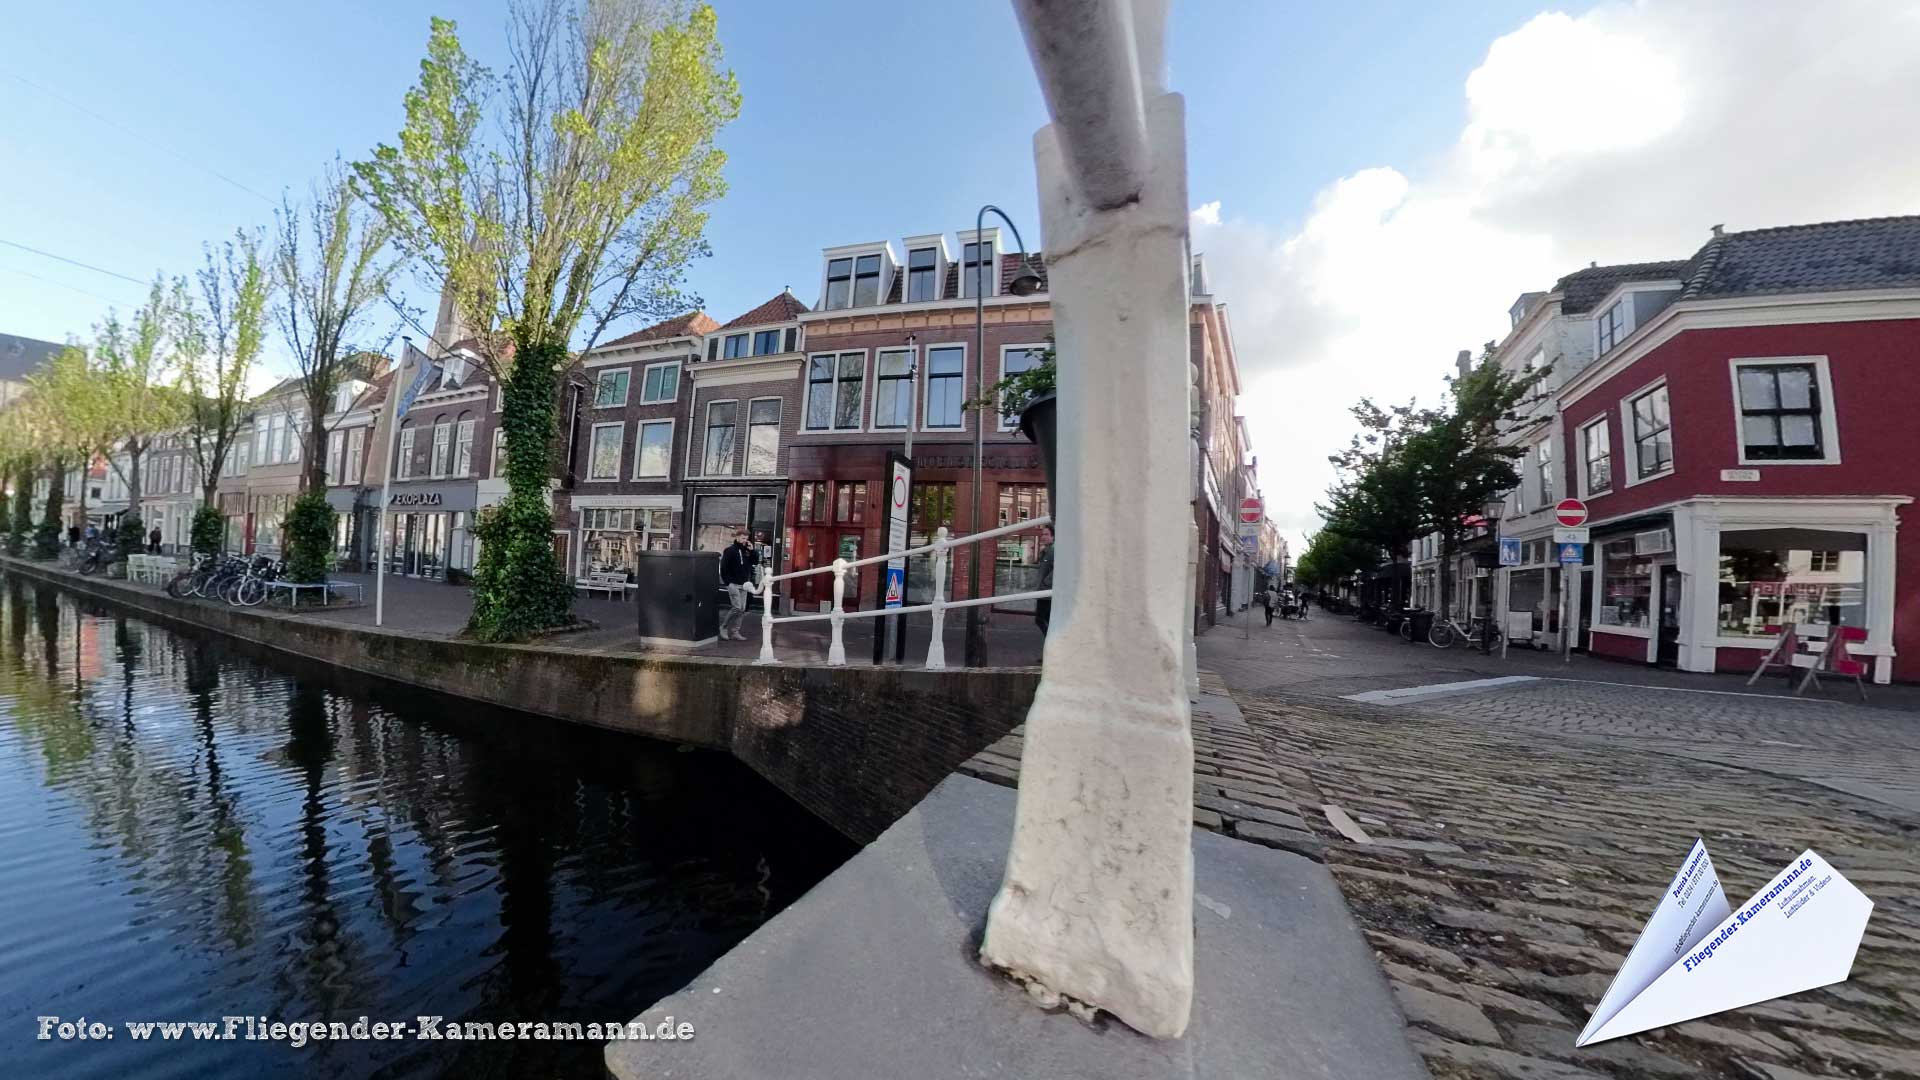 Lakenverwersbrug / Verwersgracht in Delft (NL) - 360°-Panorama